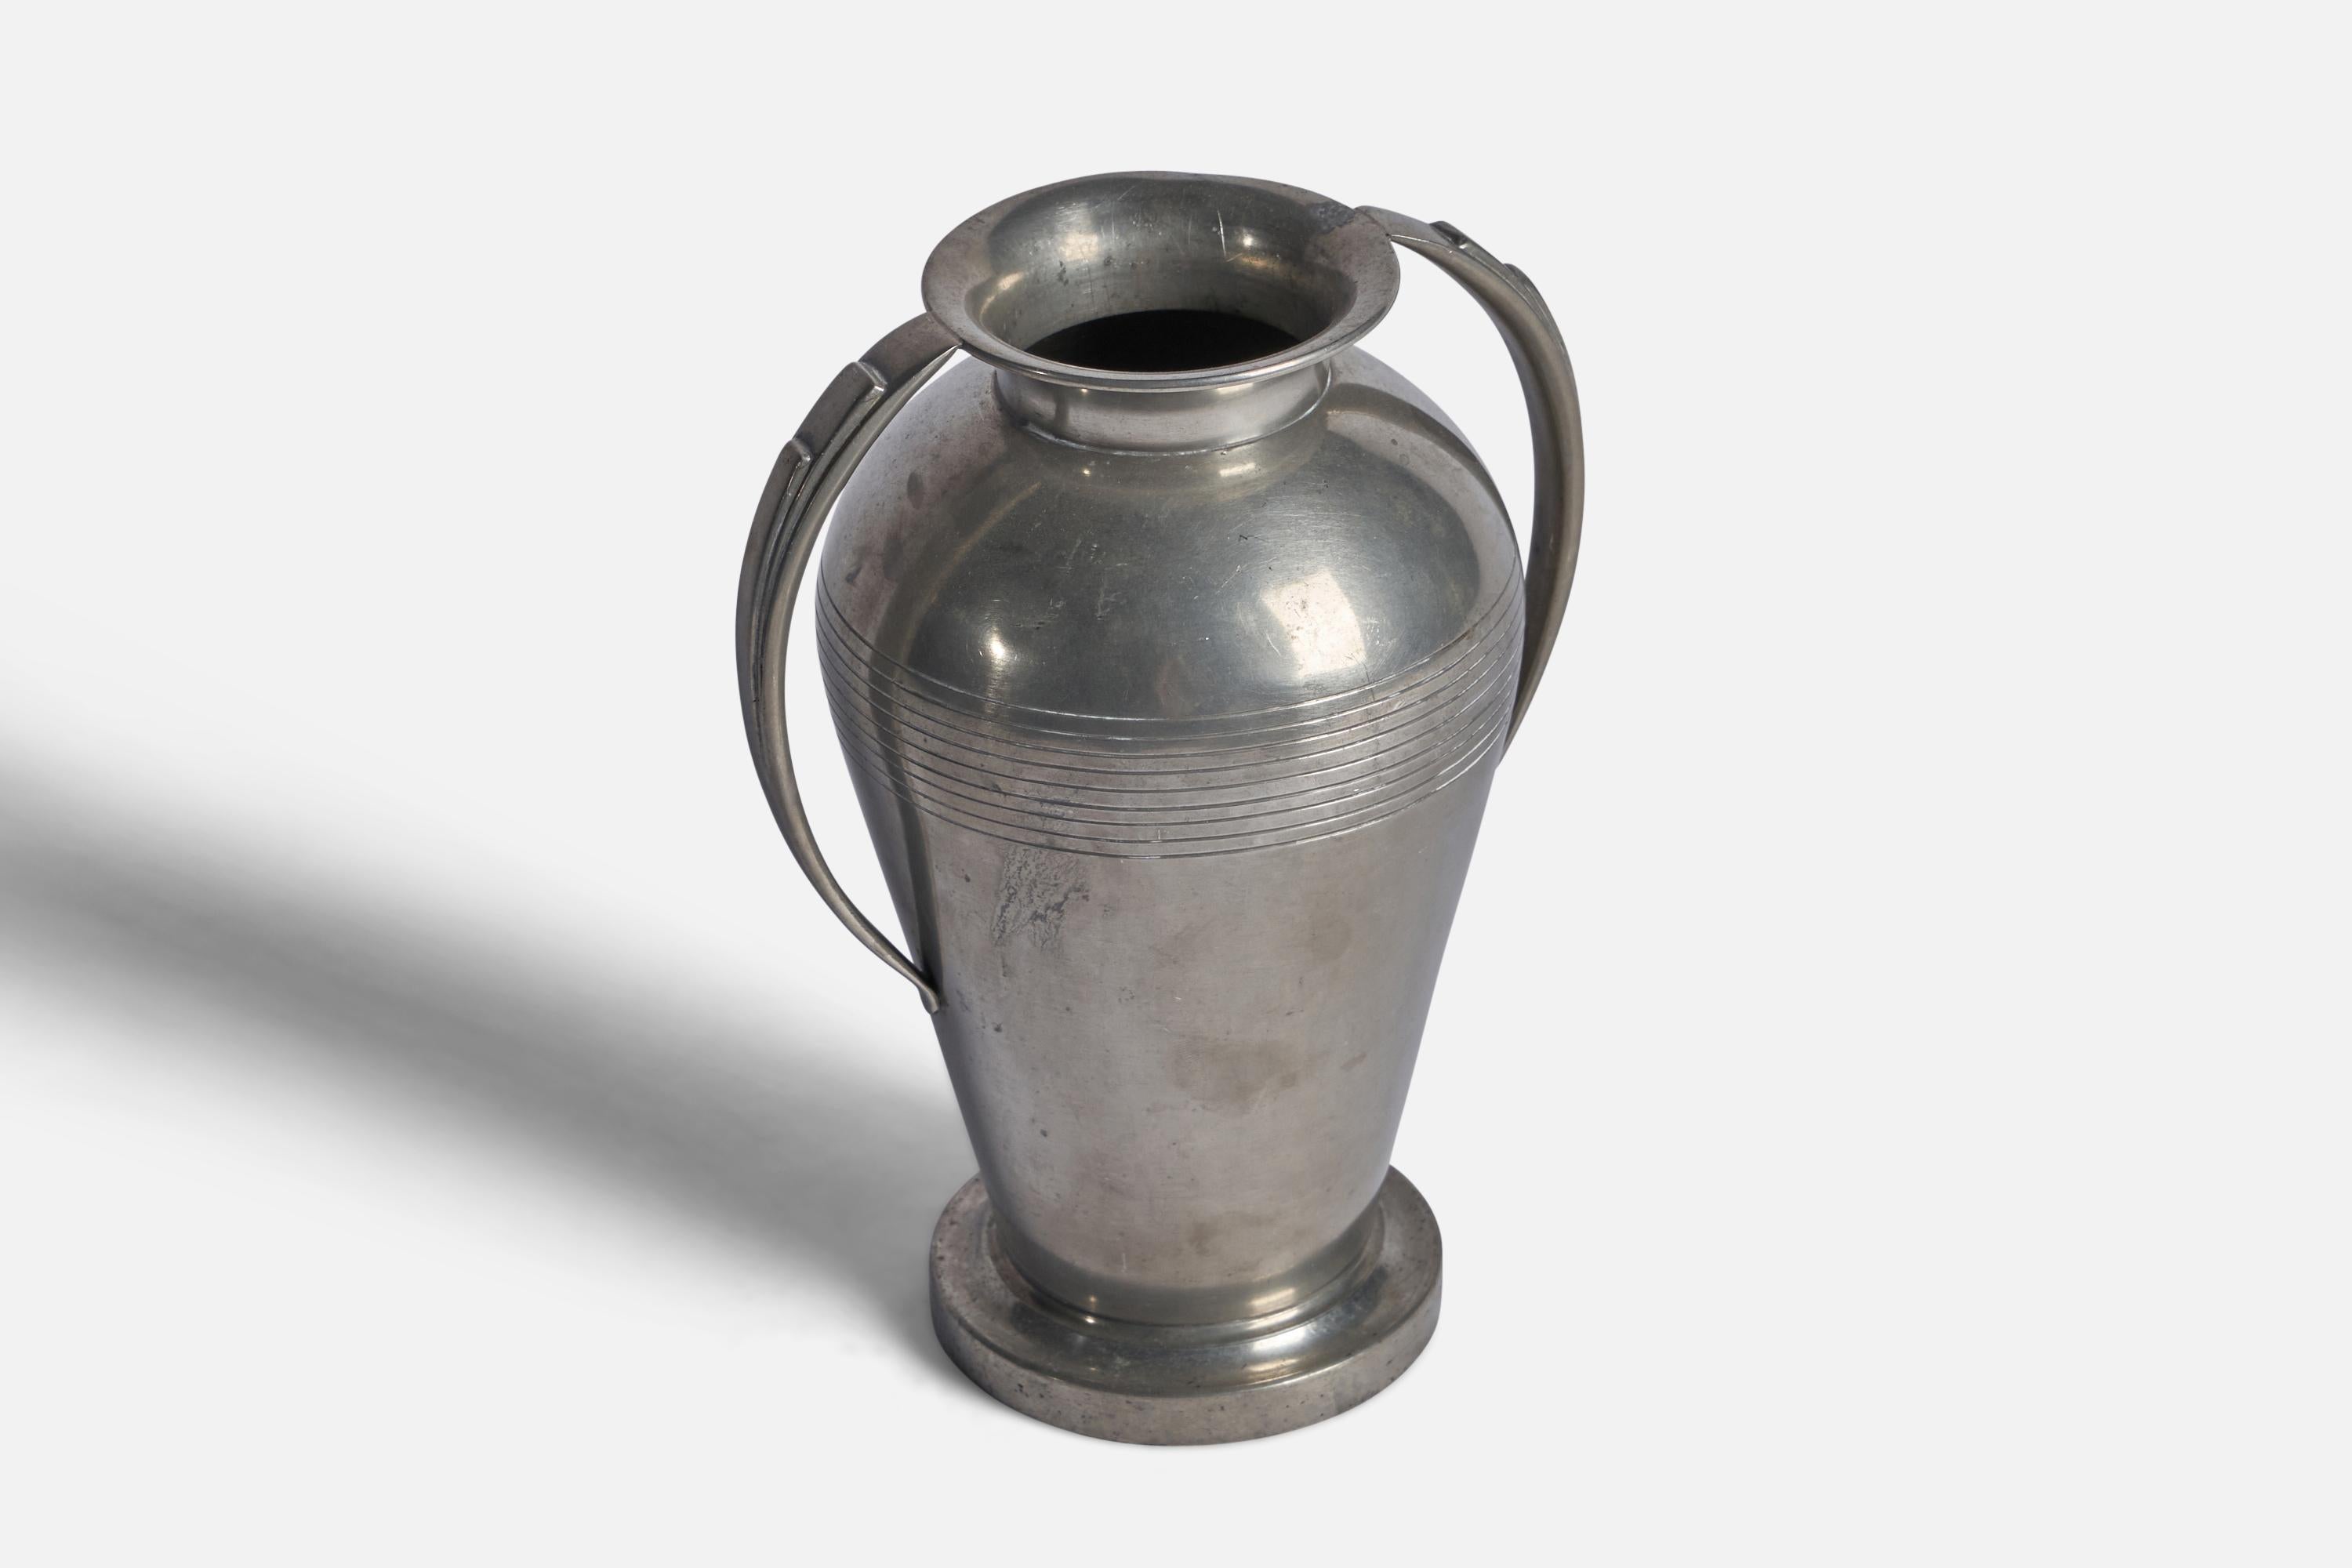 A pewter vase, designed and produced by GAB Guldsmedsaktiebolaget, Sweden, c. 1930s.